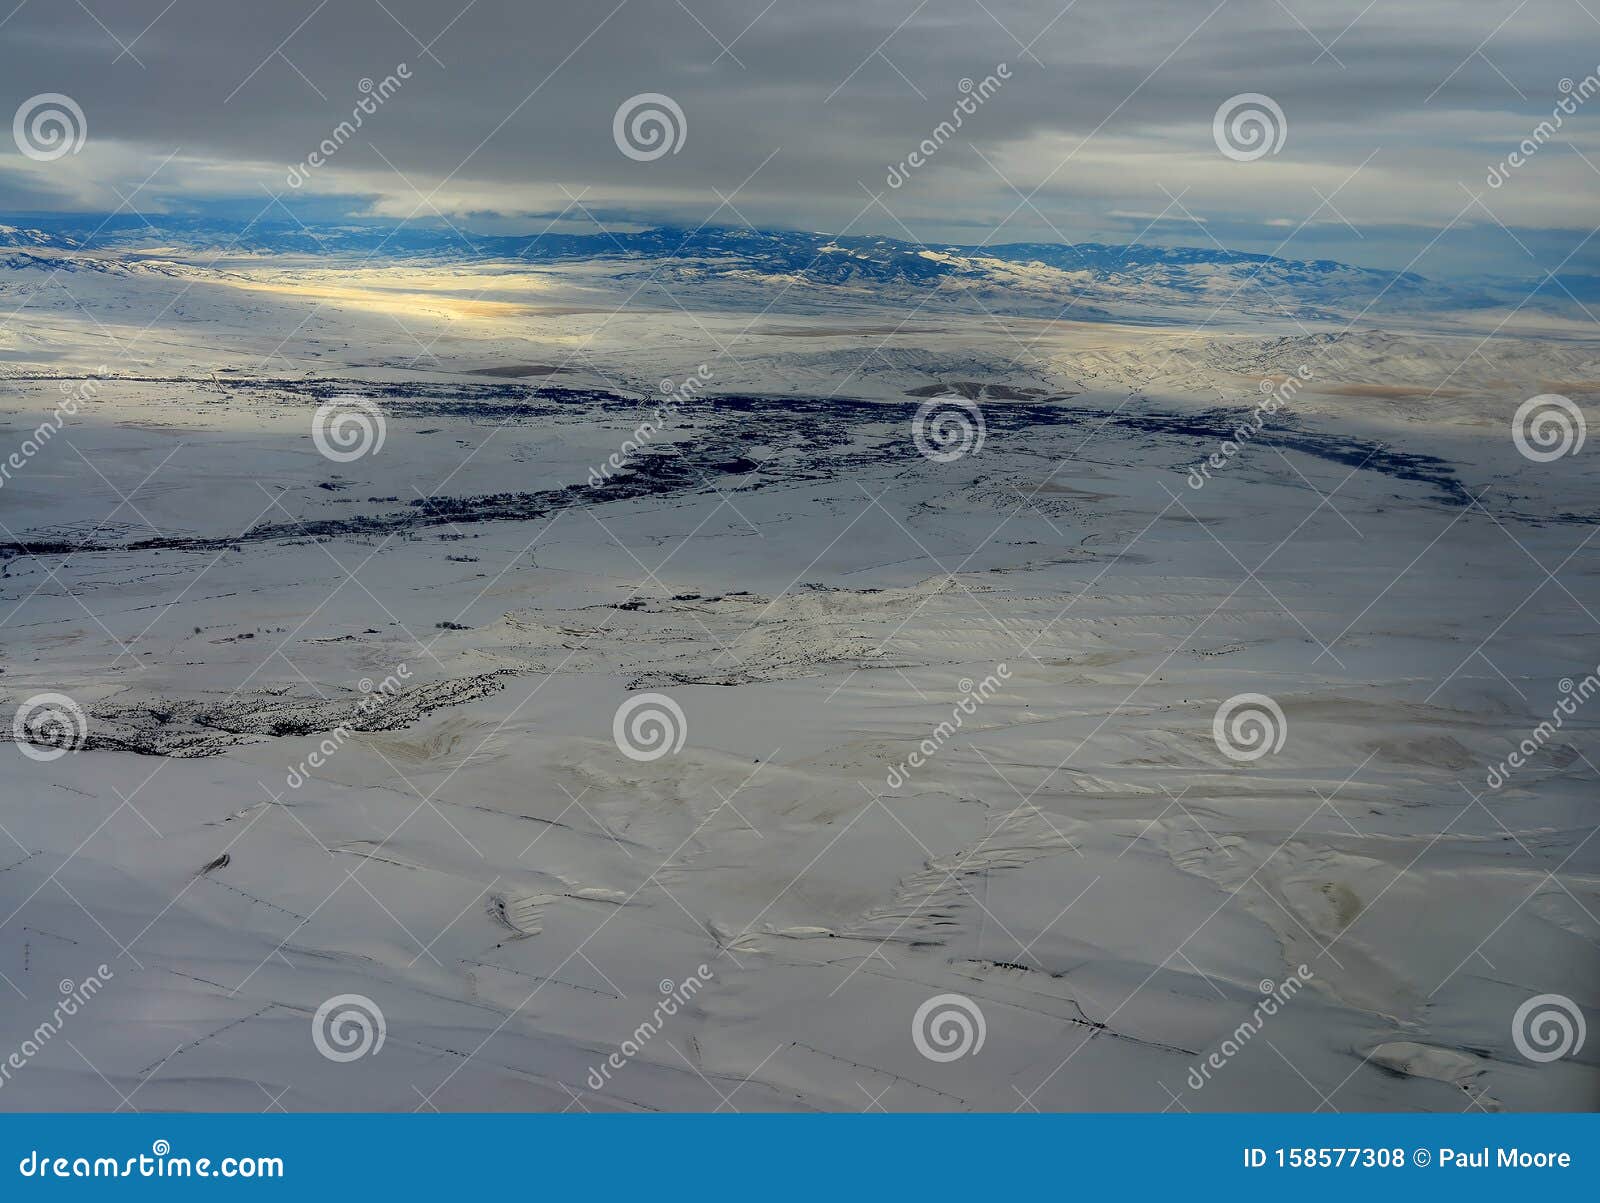 aerial view bozeman montana